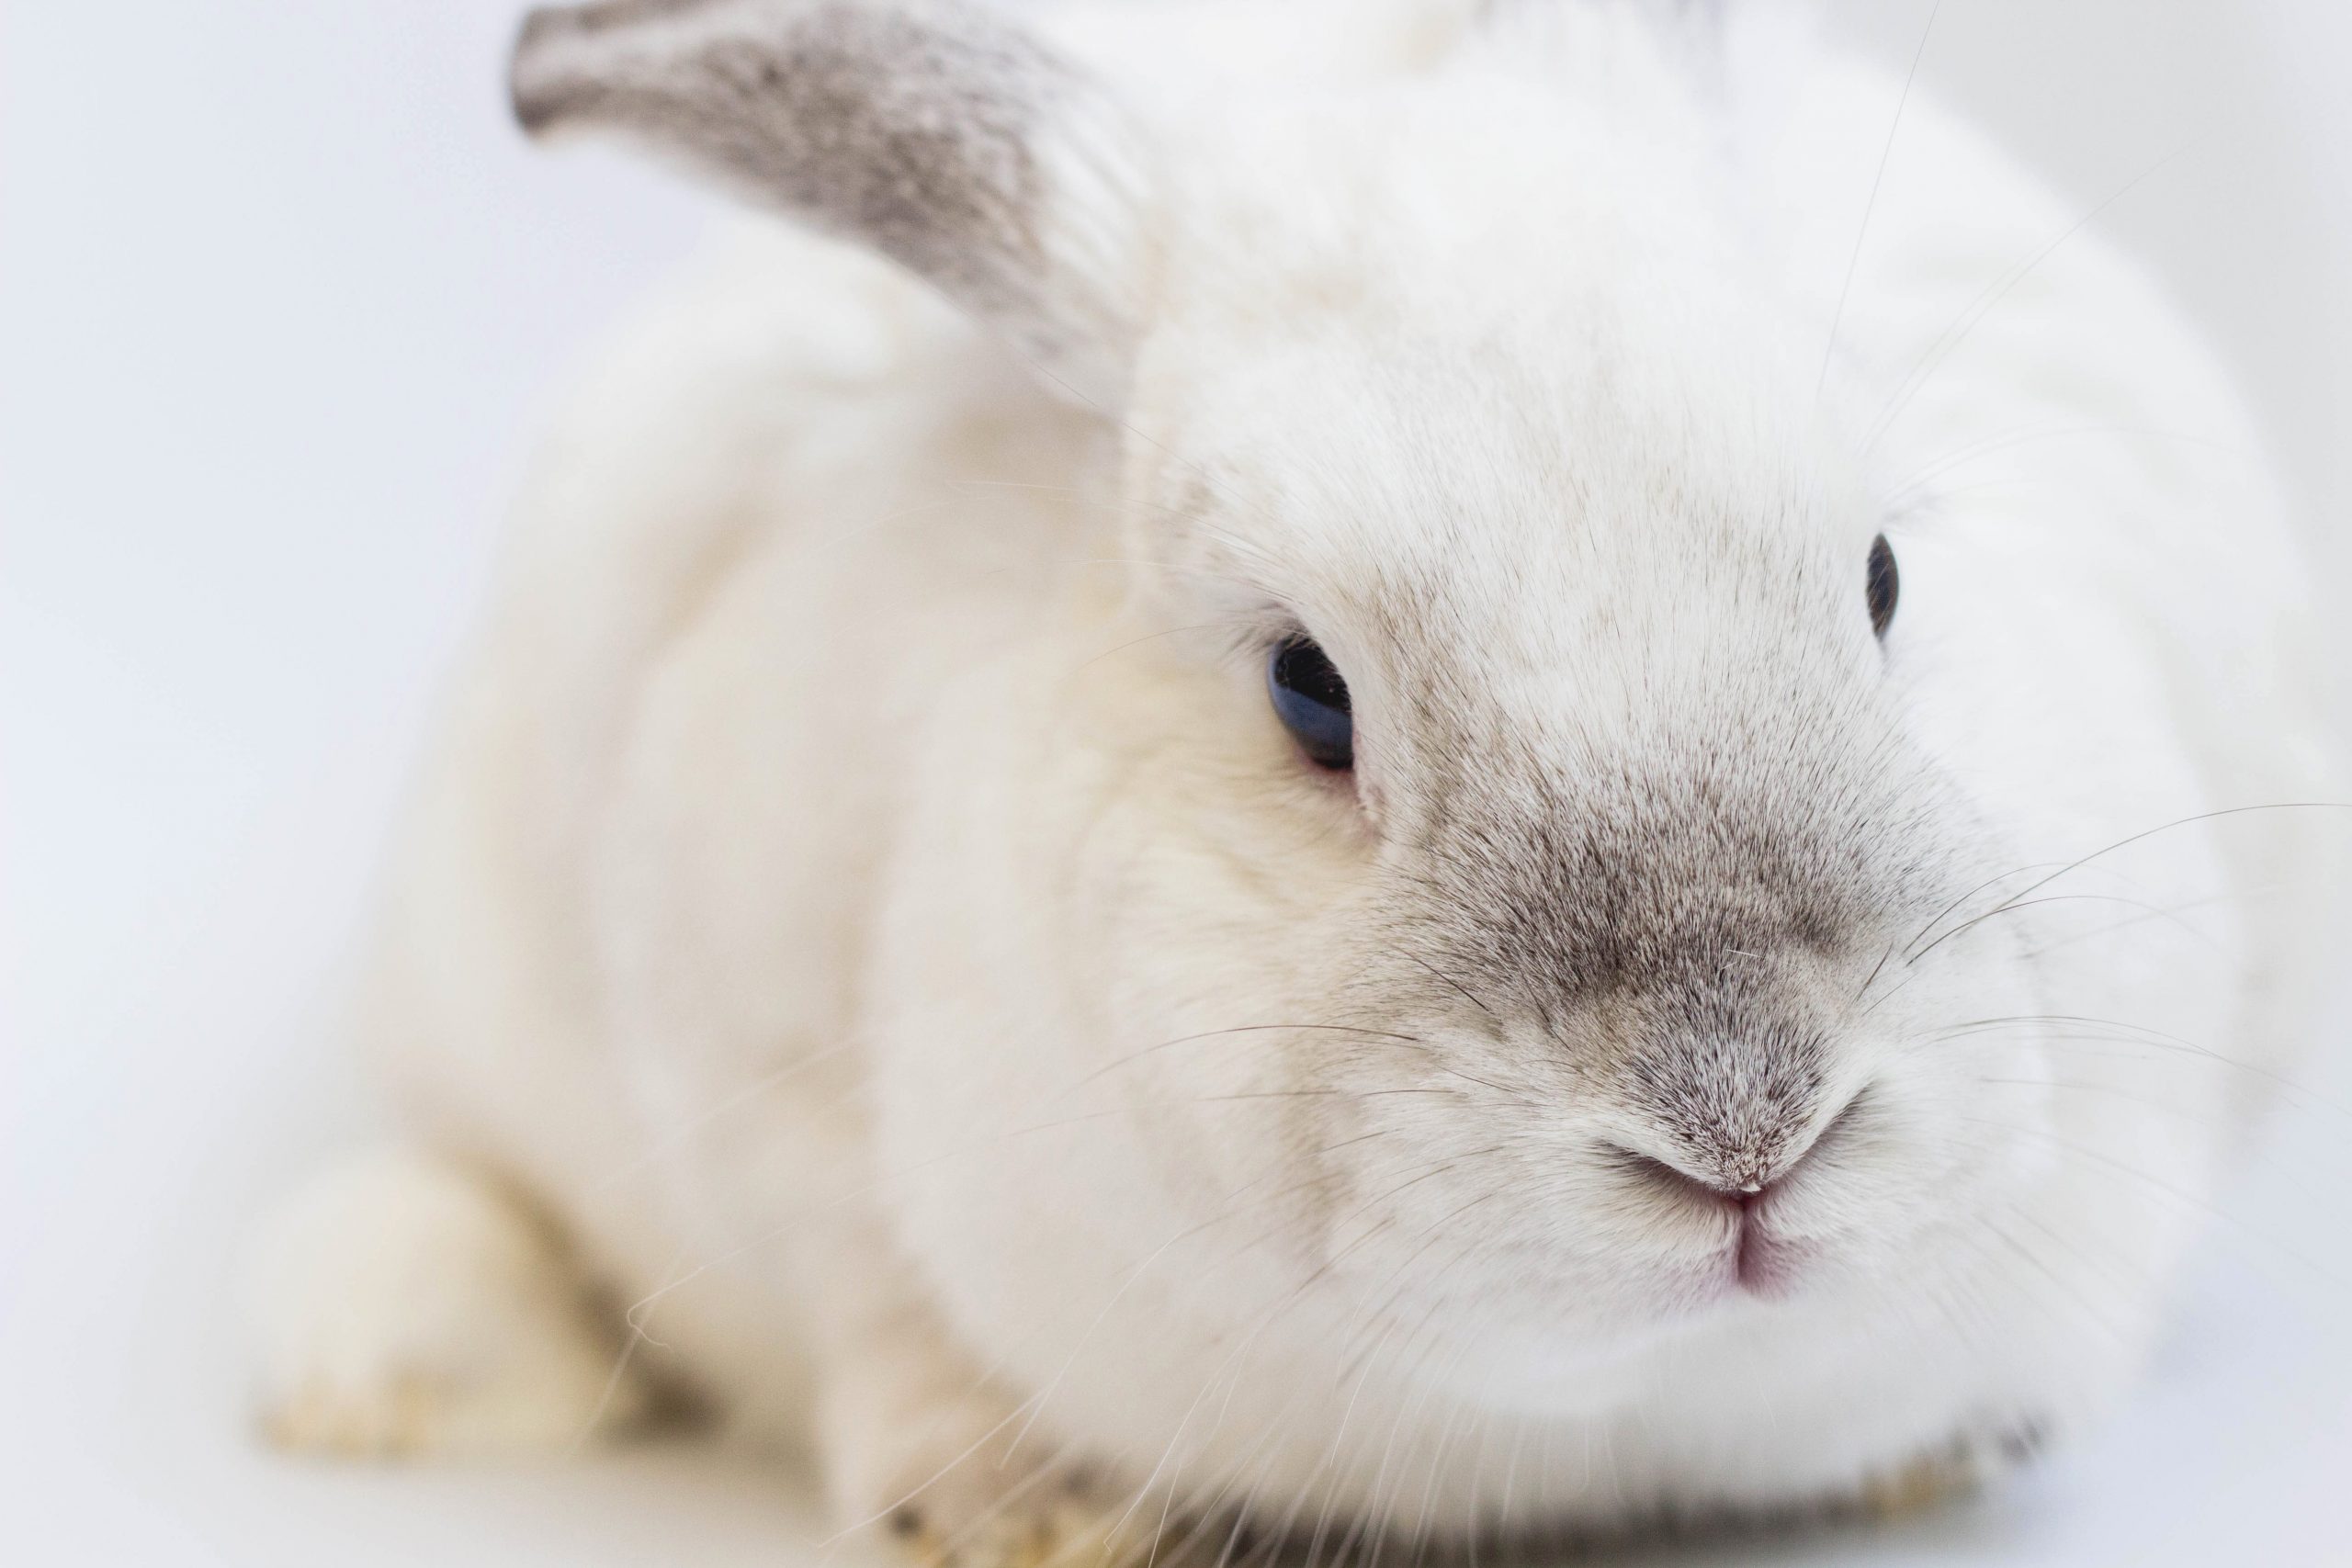 ALSA - Boutique adoption lapins sans abri